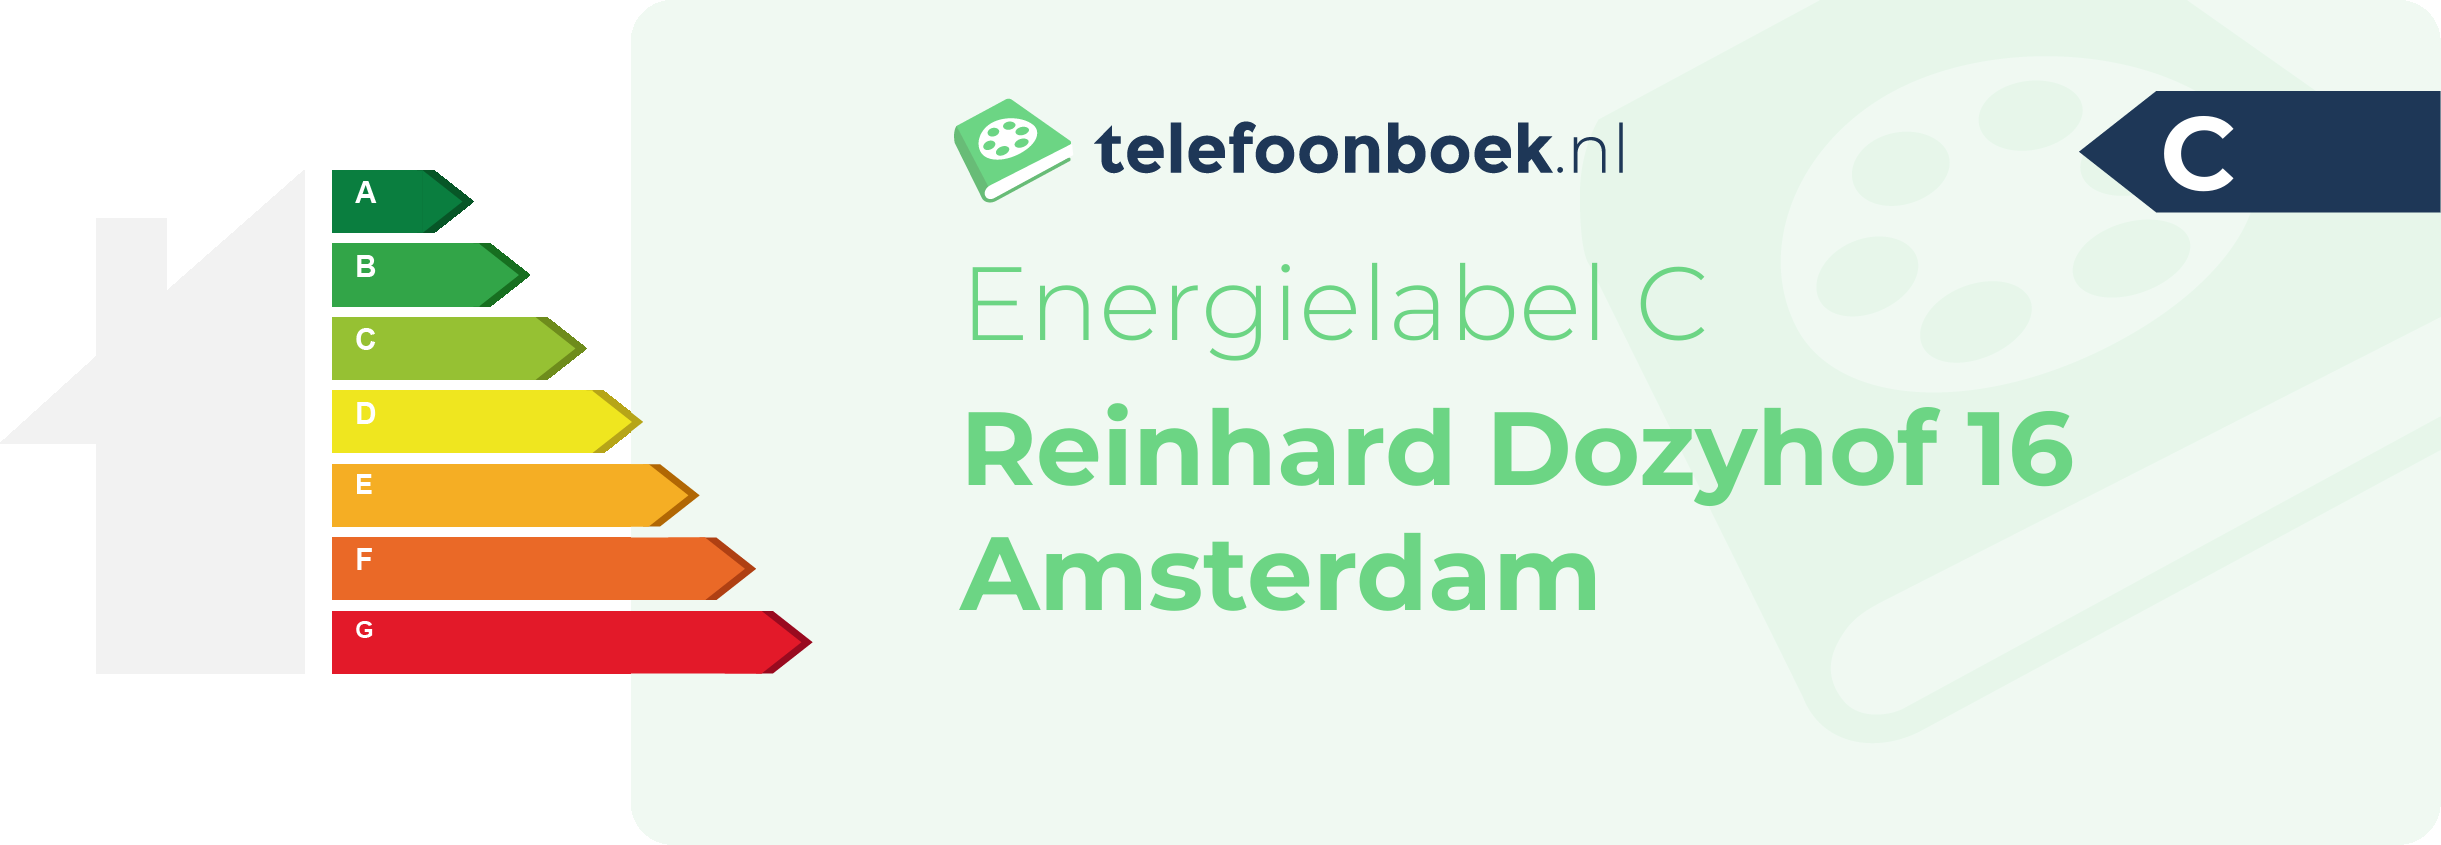 Energielabel Reinhard Dozyhof 16 Amsterdam